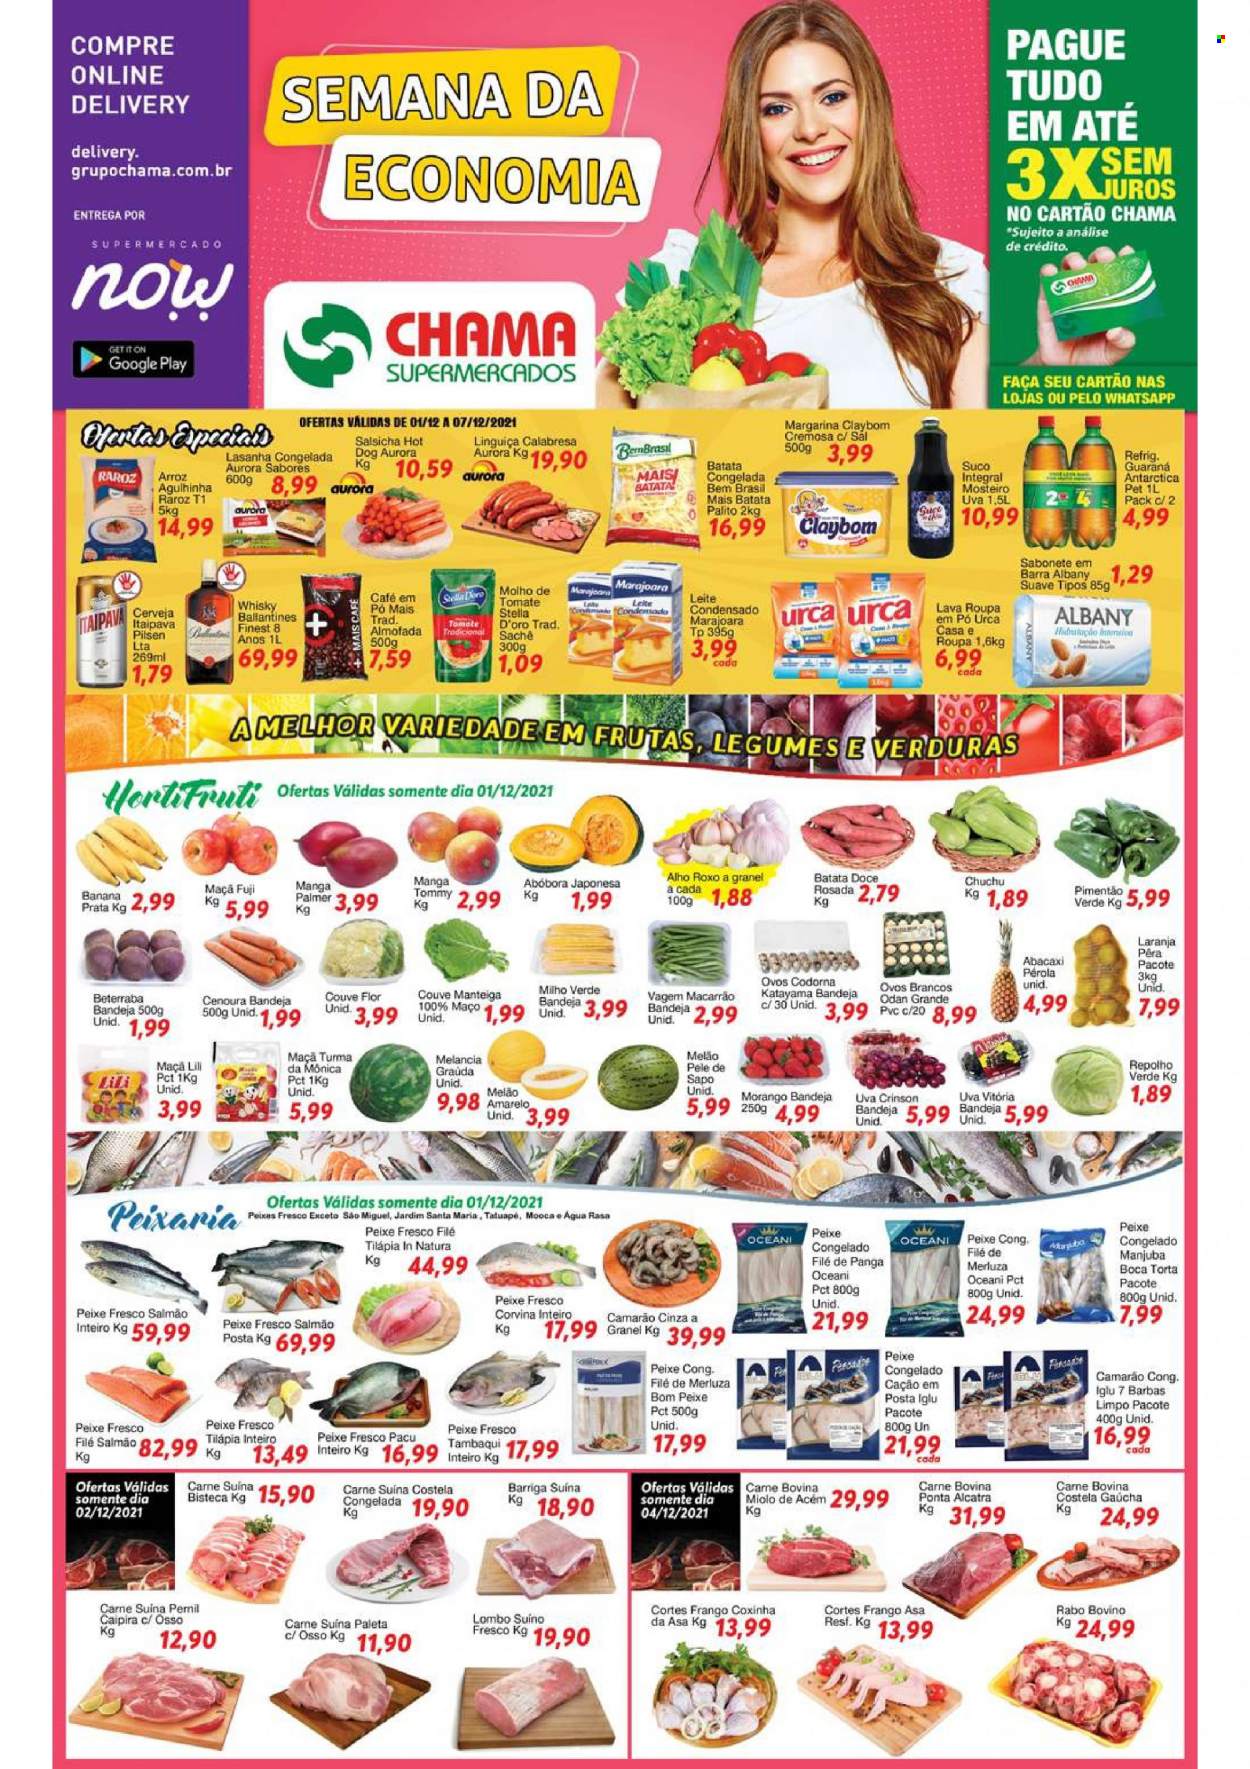 Encarte Chama Supermercados  - 01.12.2021 - 07.12.2021.